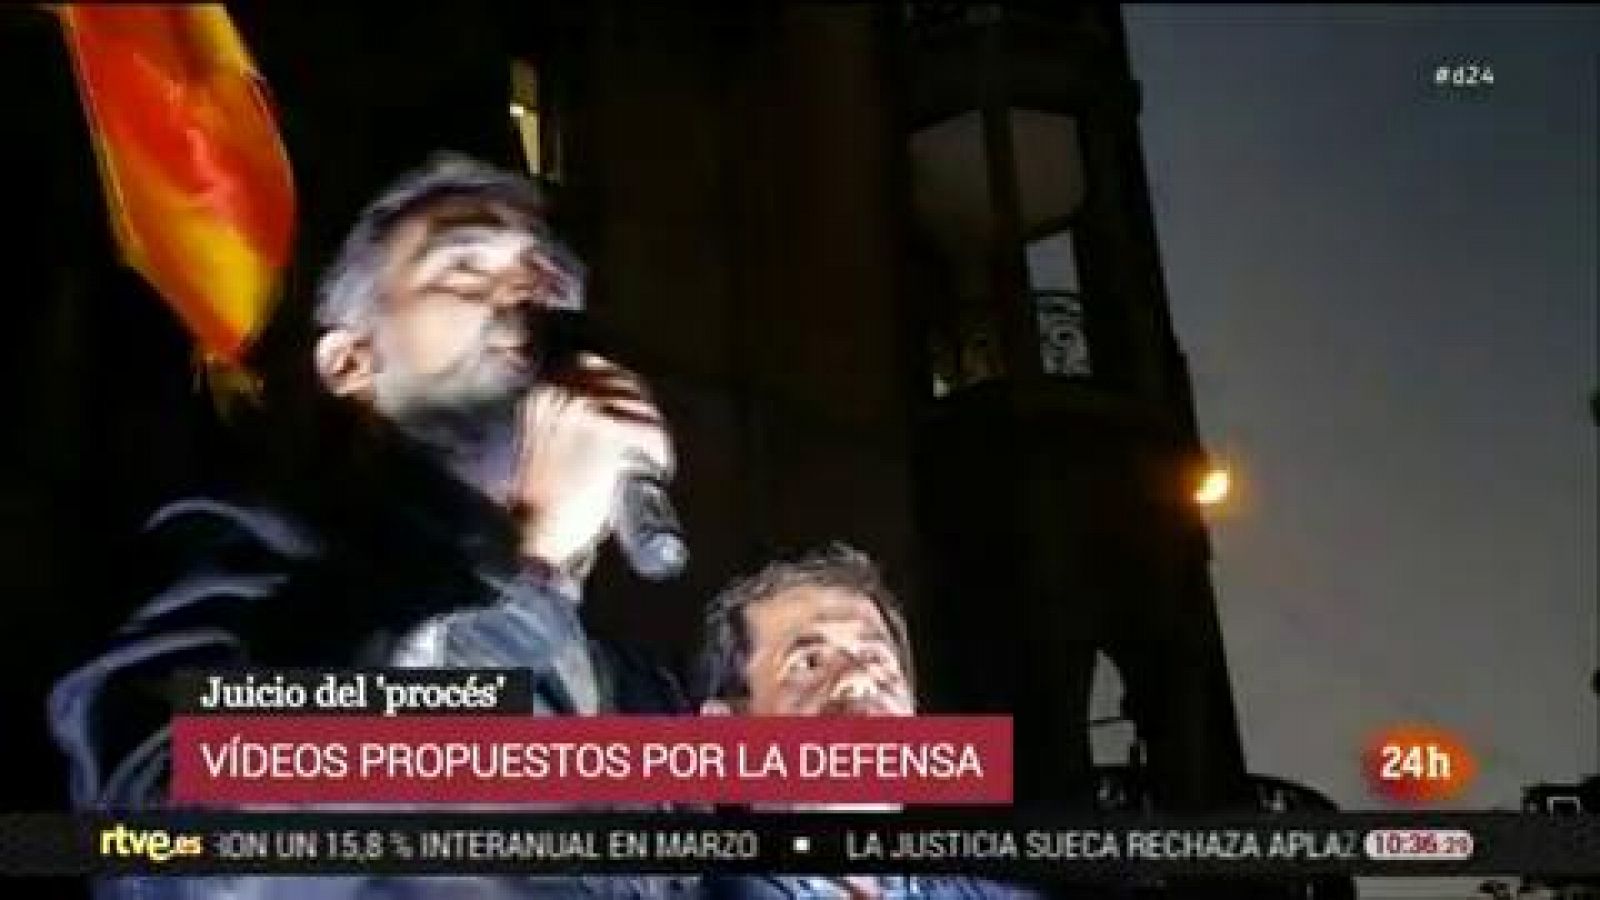 Juicio procés: Las defensas proyecta un vídeo de Cuixart en el que pide "desenmascarar" a los violentos el 20S